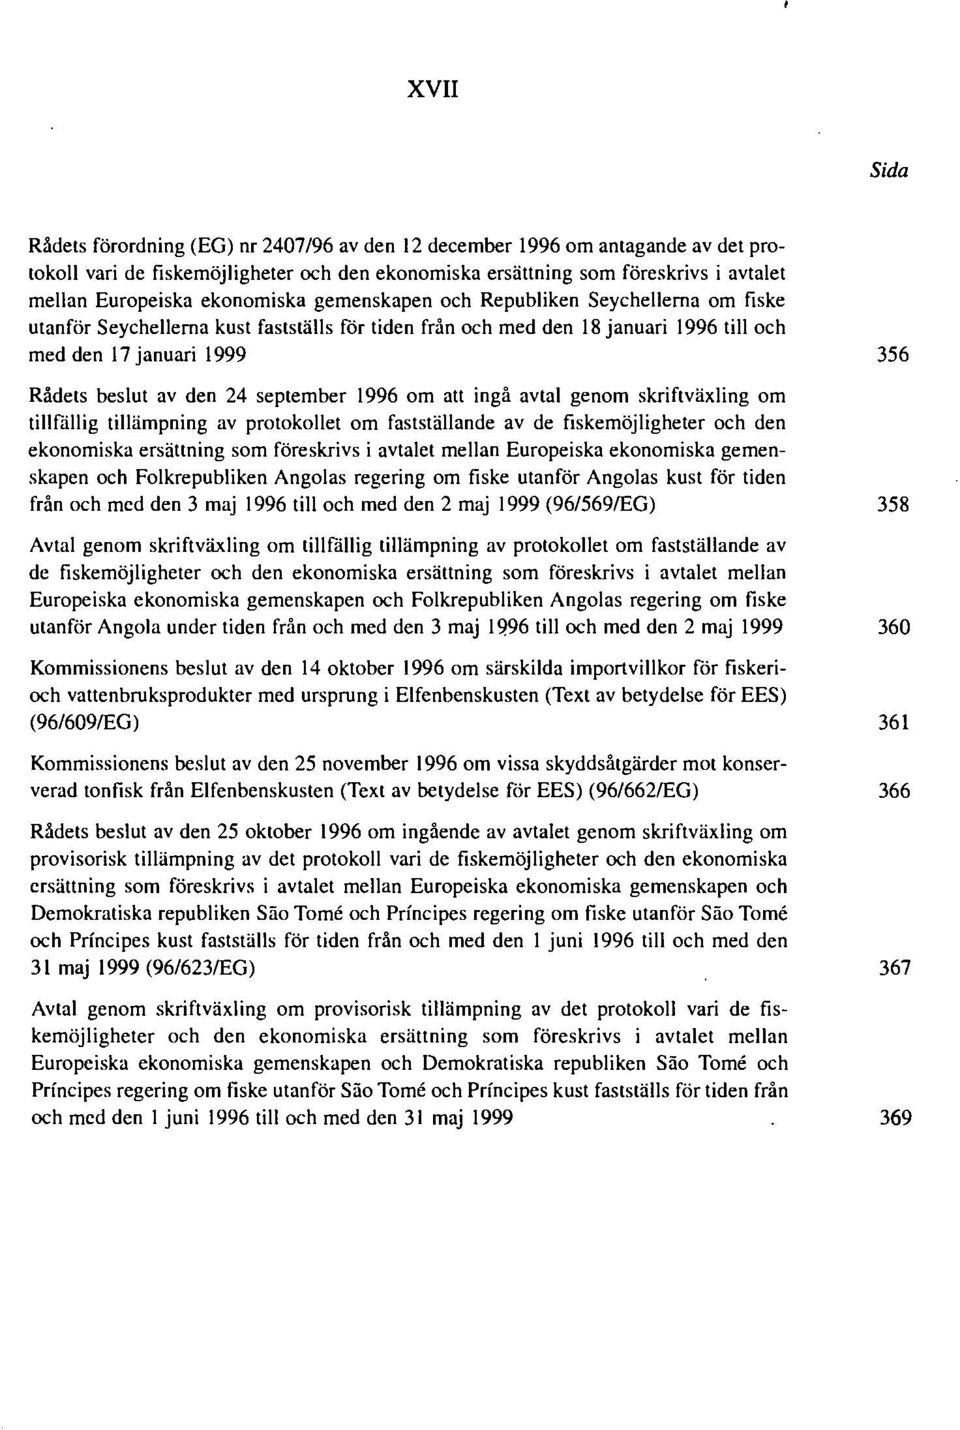 24 september 1996 om att ingå avtal genom skriftväxling om tillfällig tillämpning av protokollet om fastställande av de fiskemöjligheter och den ekonomiska ersättning som föreskrivs i avtalet mellan